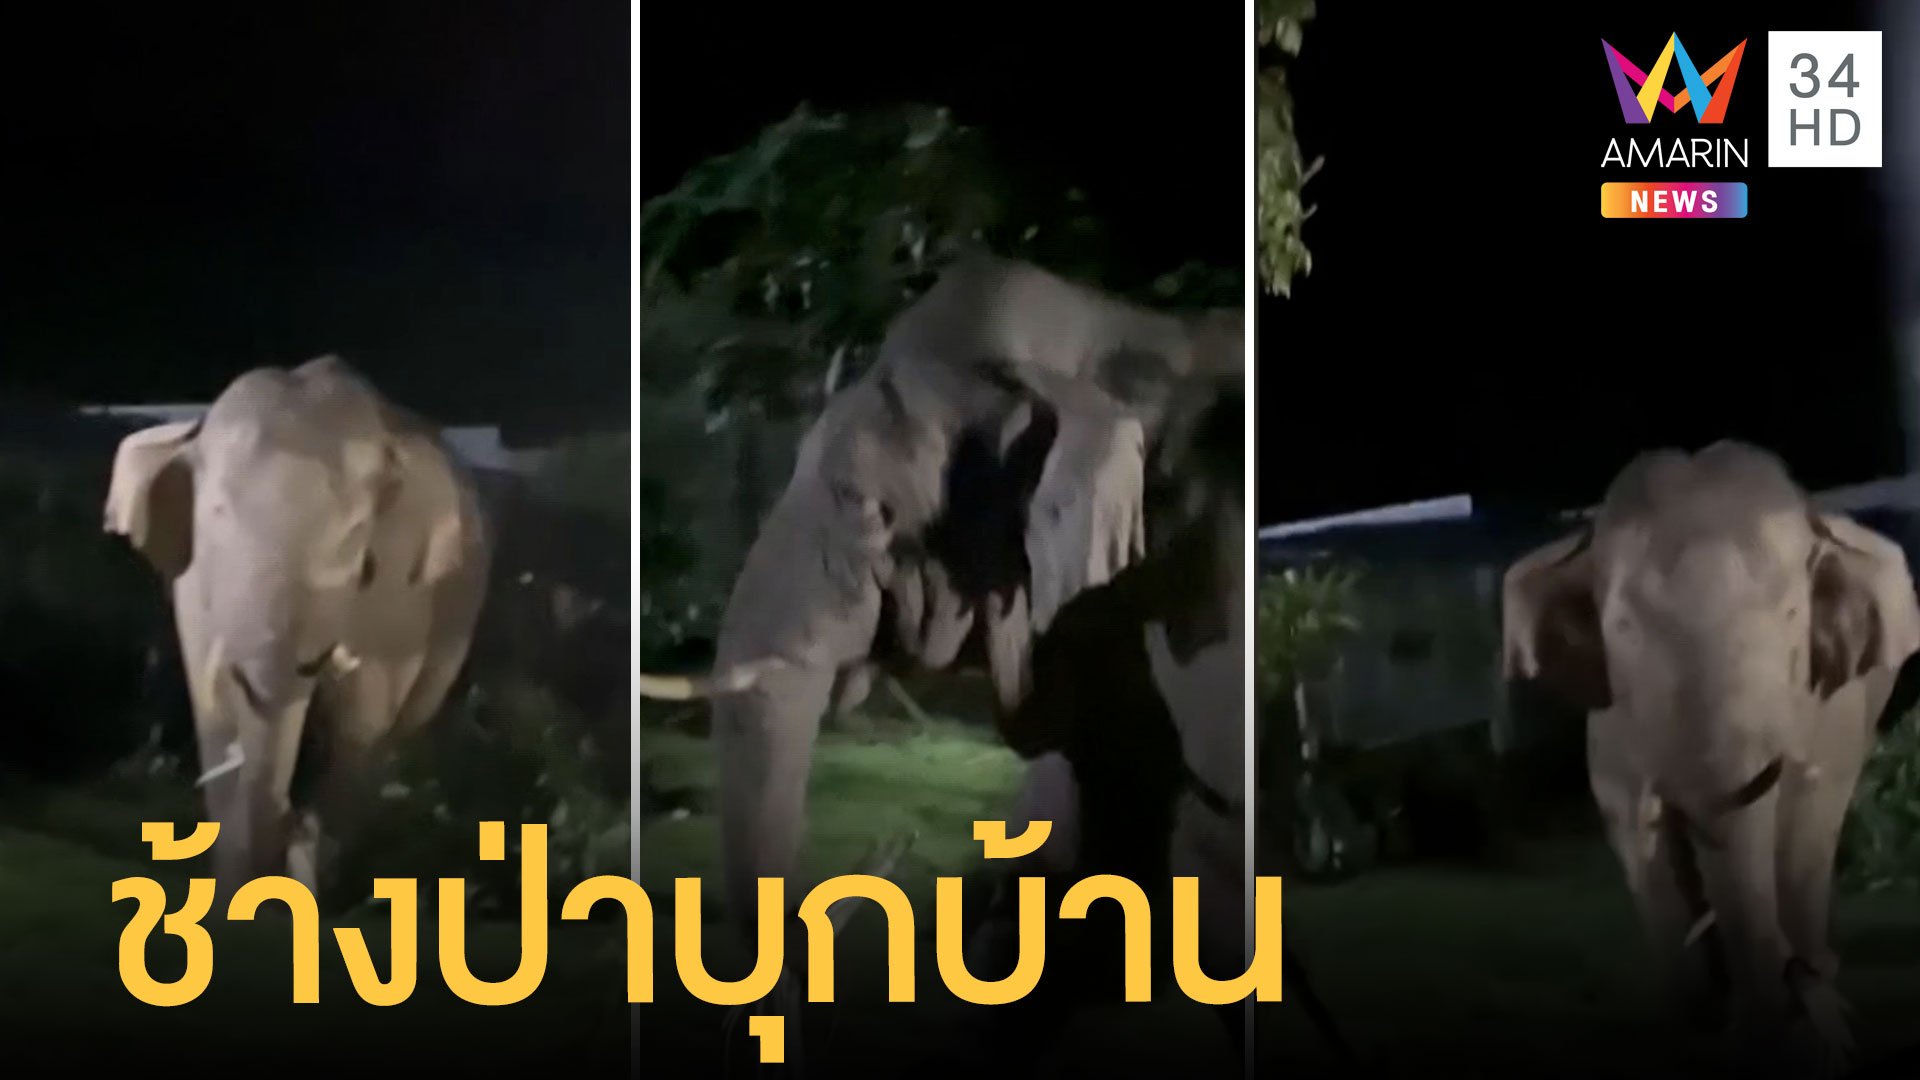 เจ้างาเบี่ยง ช้างป่าเขาใหญ่หิวหนักมาก บุกกินพืชสวนชาวบ้าน เจ้าของต้องอ้อนวอน | ข่าวอรุณอมรินทร์ | 28 มิ.ย. 65 | AMARIN TVHD34